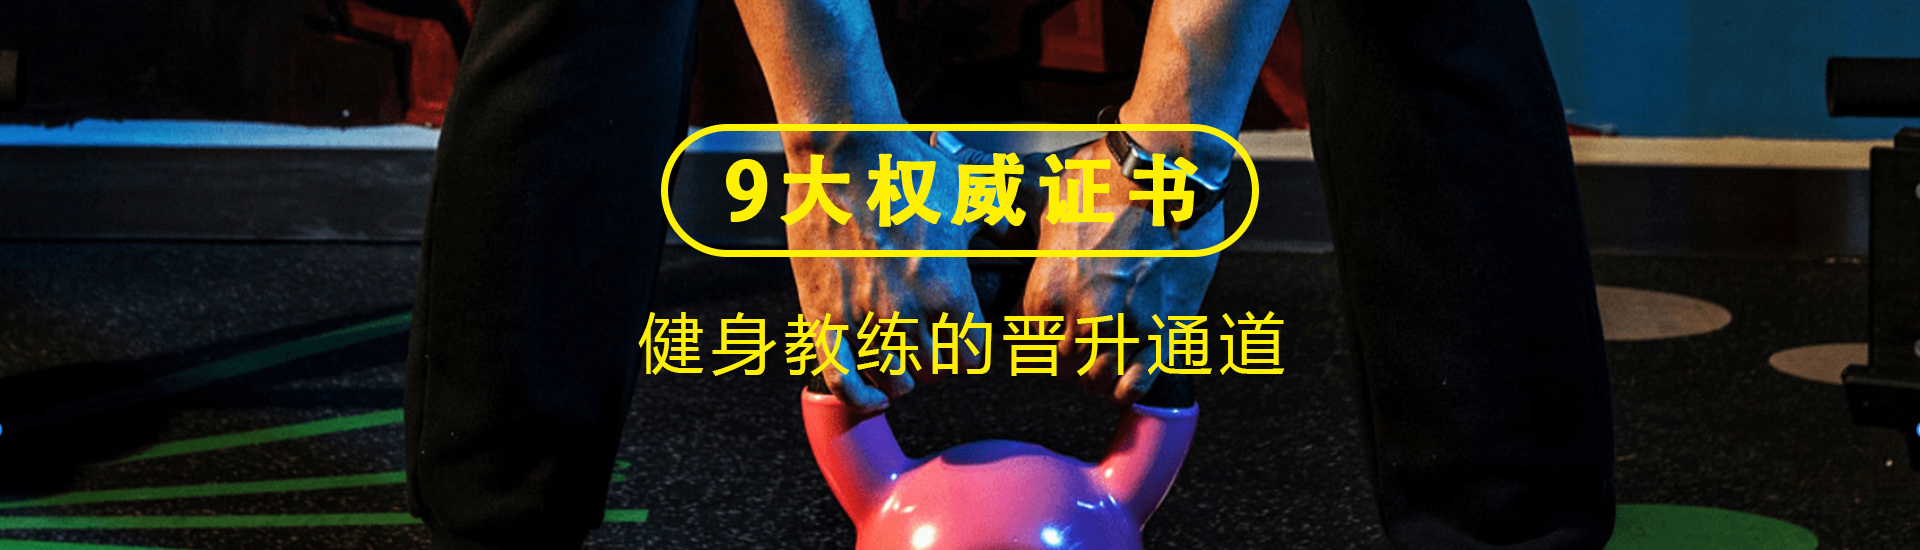 重庆健身高级私教培训课程